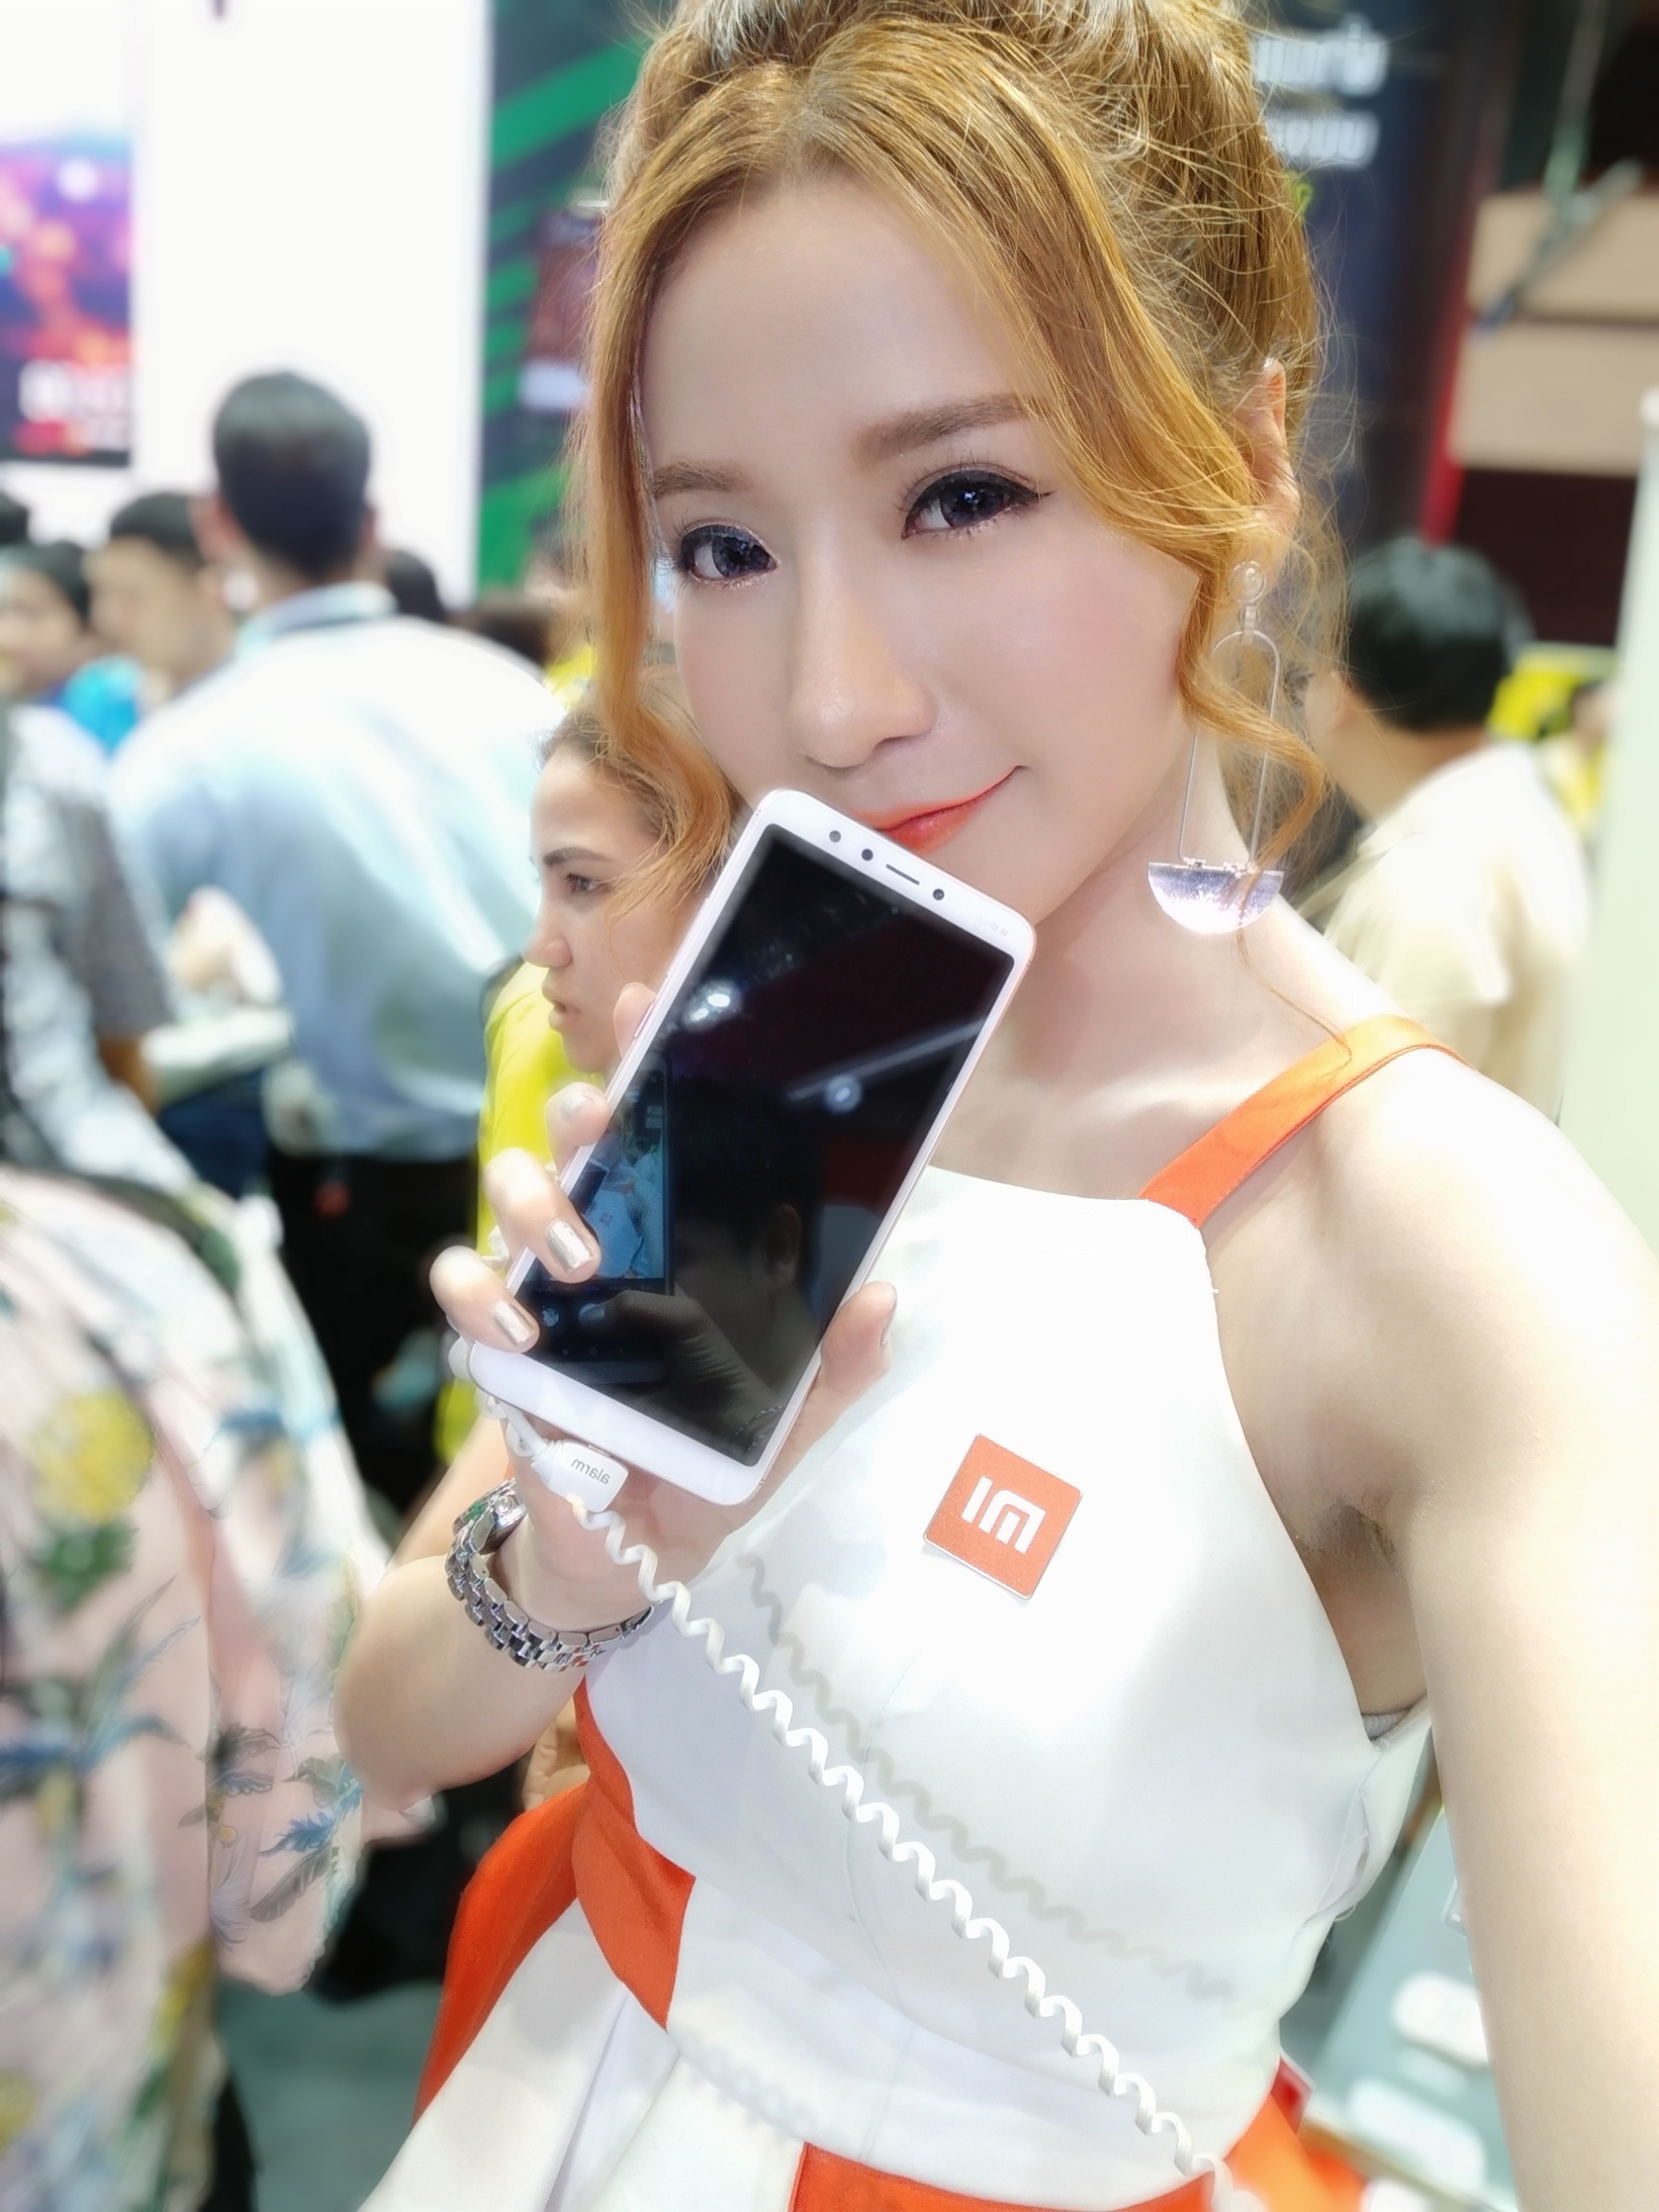 Preview | พรีวิว Xiaomi Redmi S2 อีกหนึ่งรุ่นสุดคุ้ม ที่รอลุ้นราคาเปิดตัวกับ AIS เร็วๆ นี้